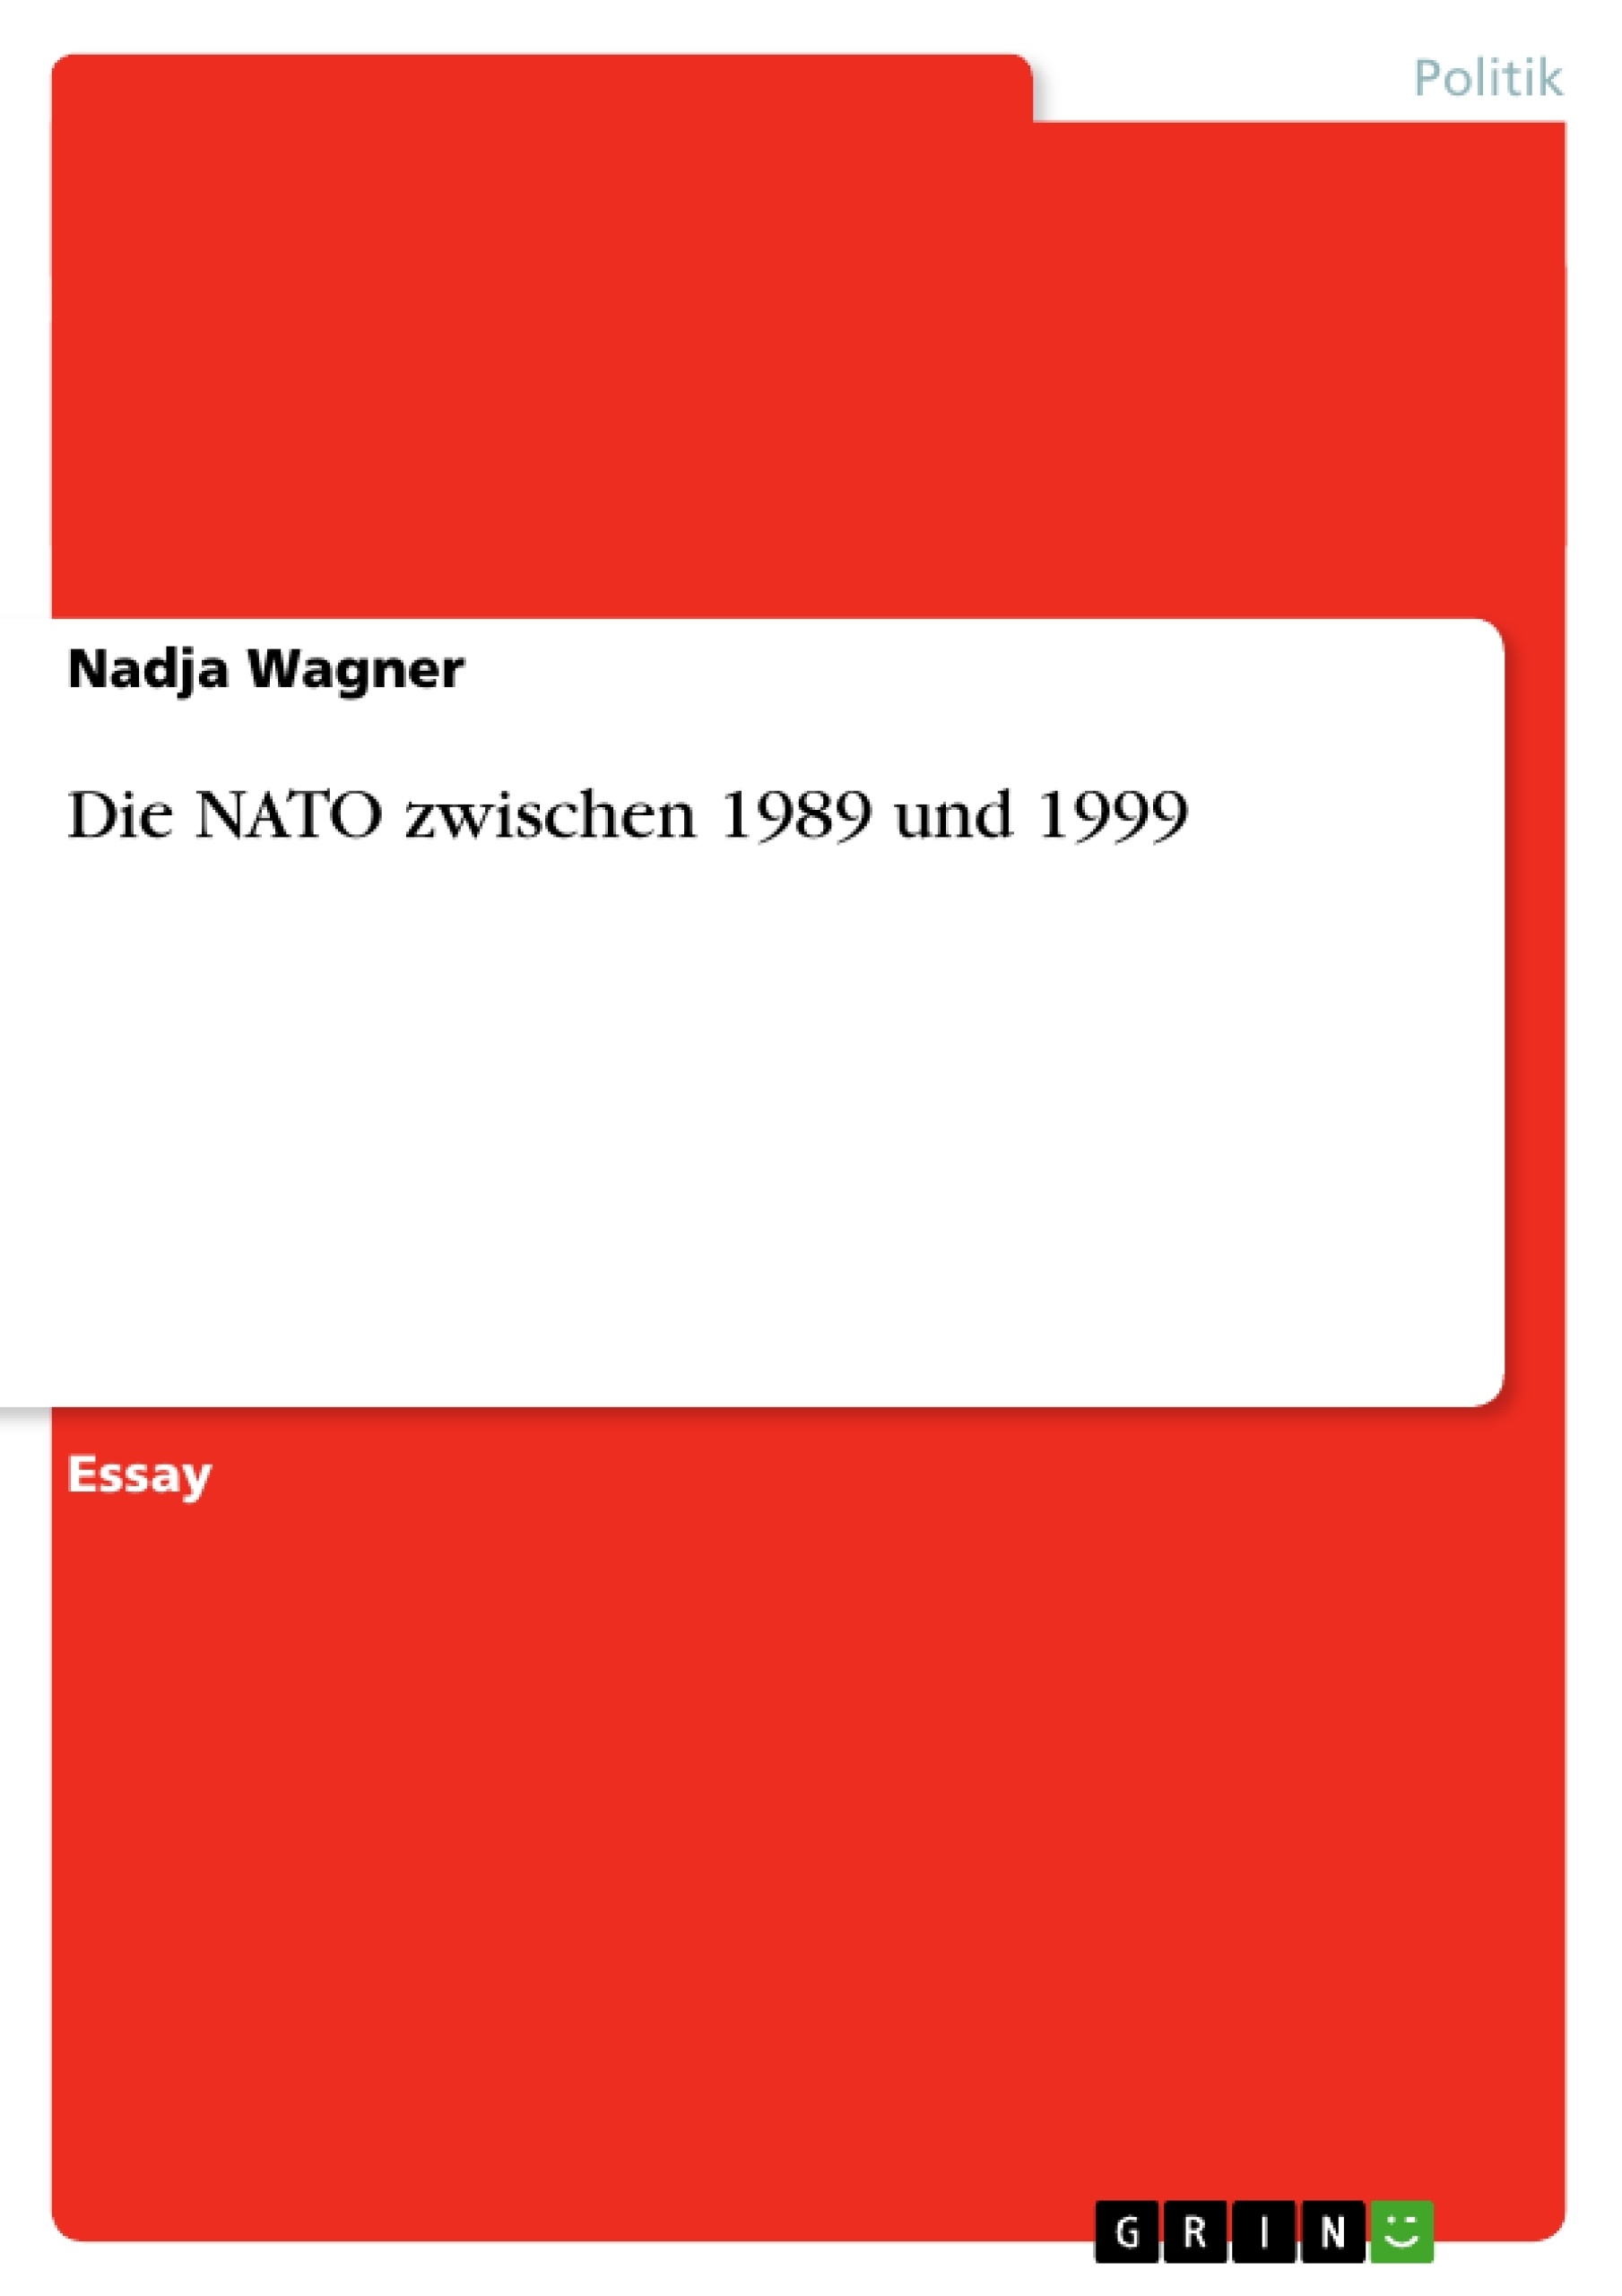 Title: Die NATO zwischen 1989 und 1999